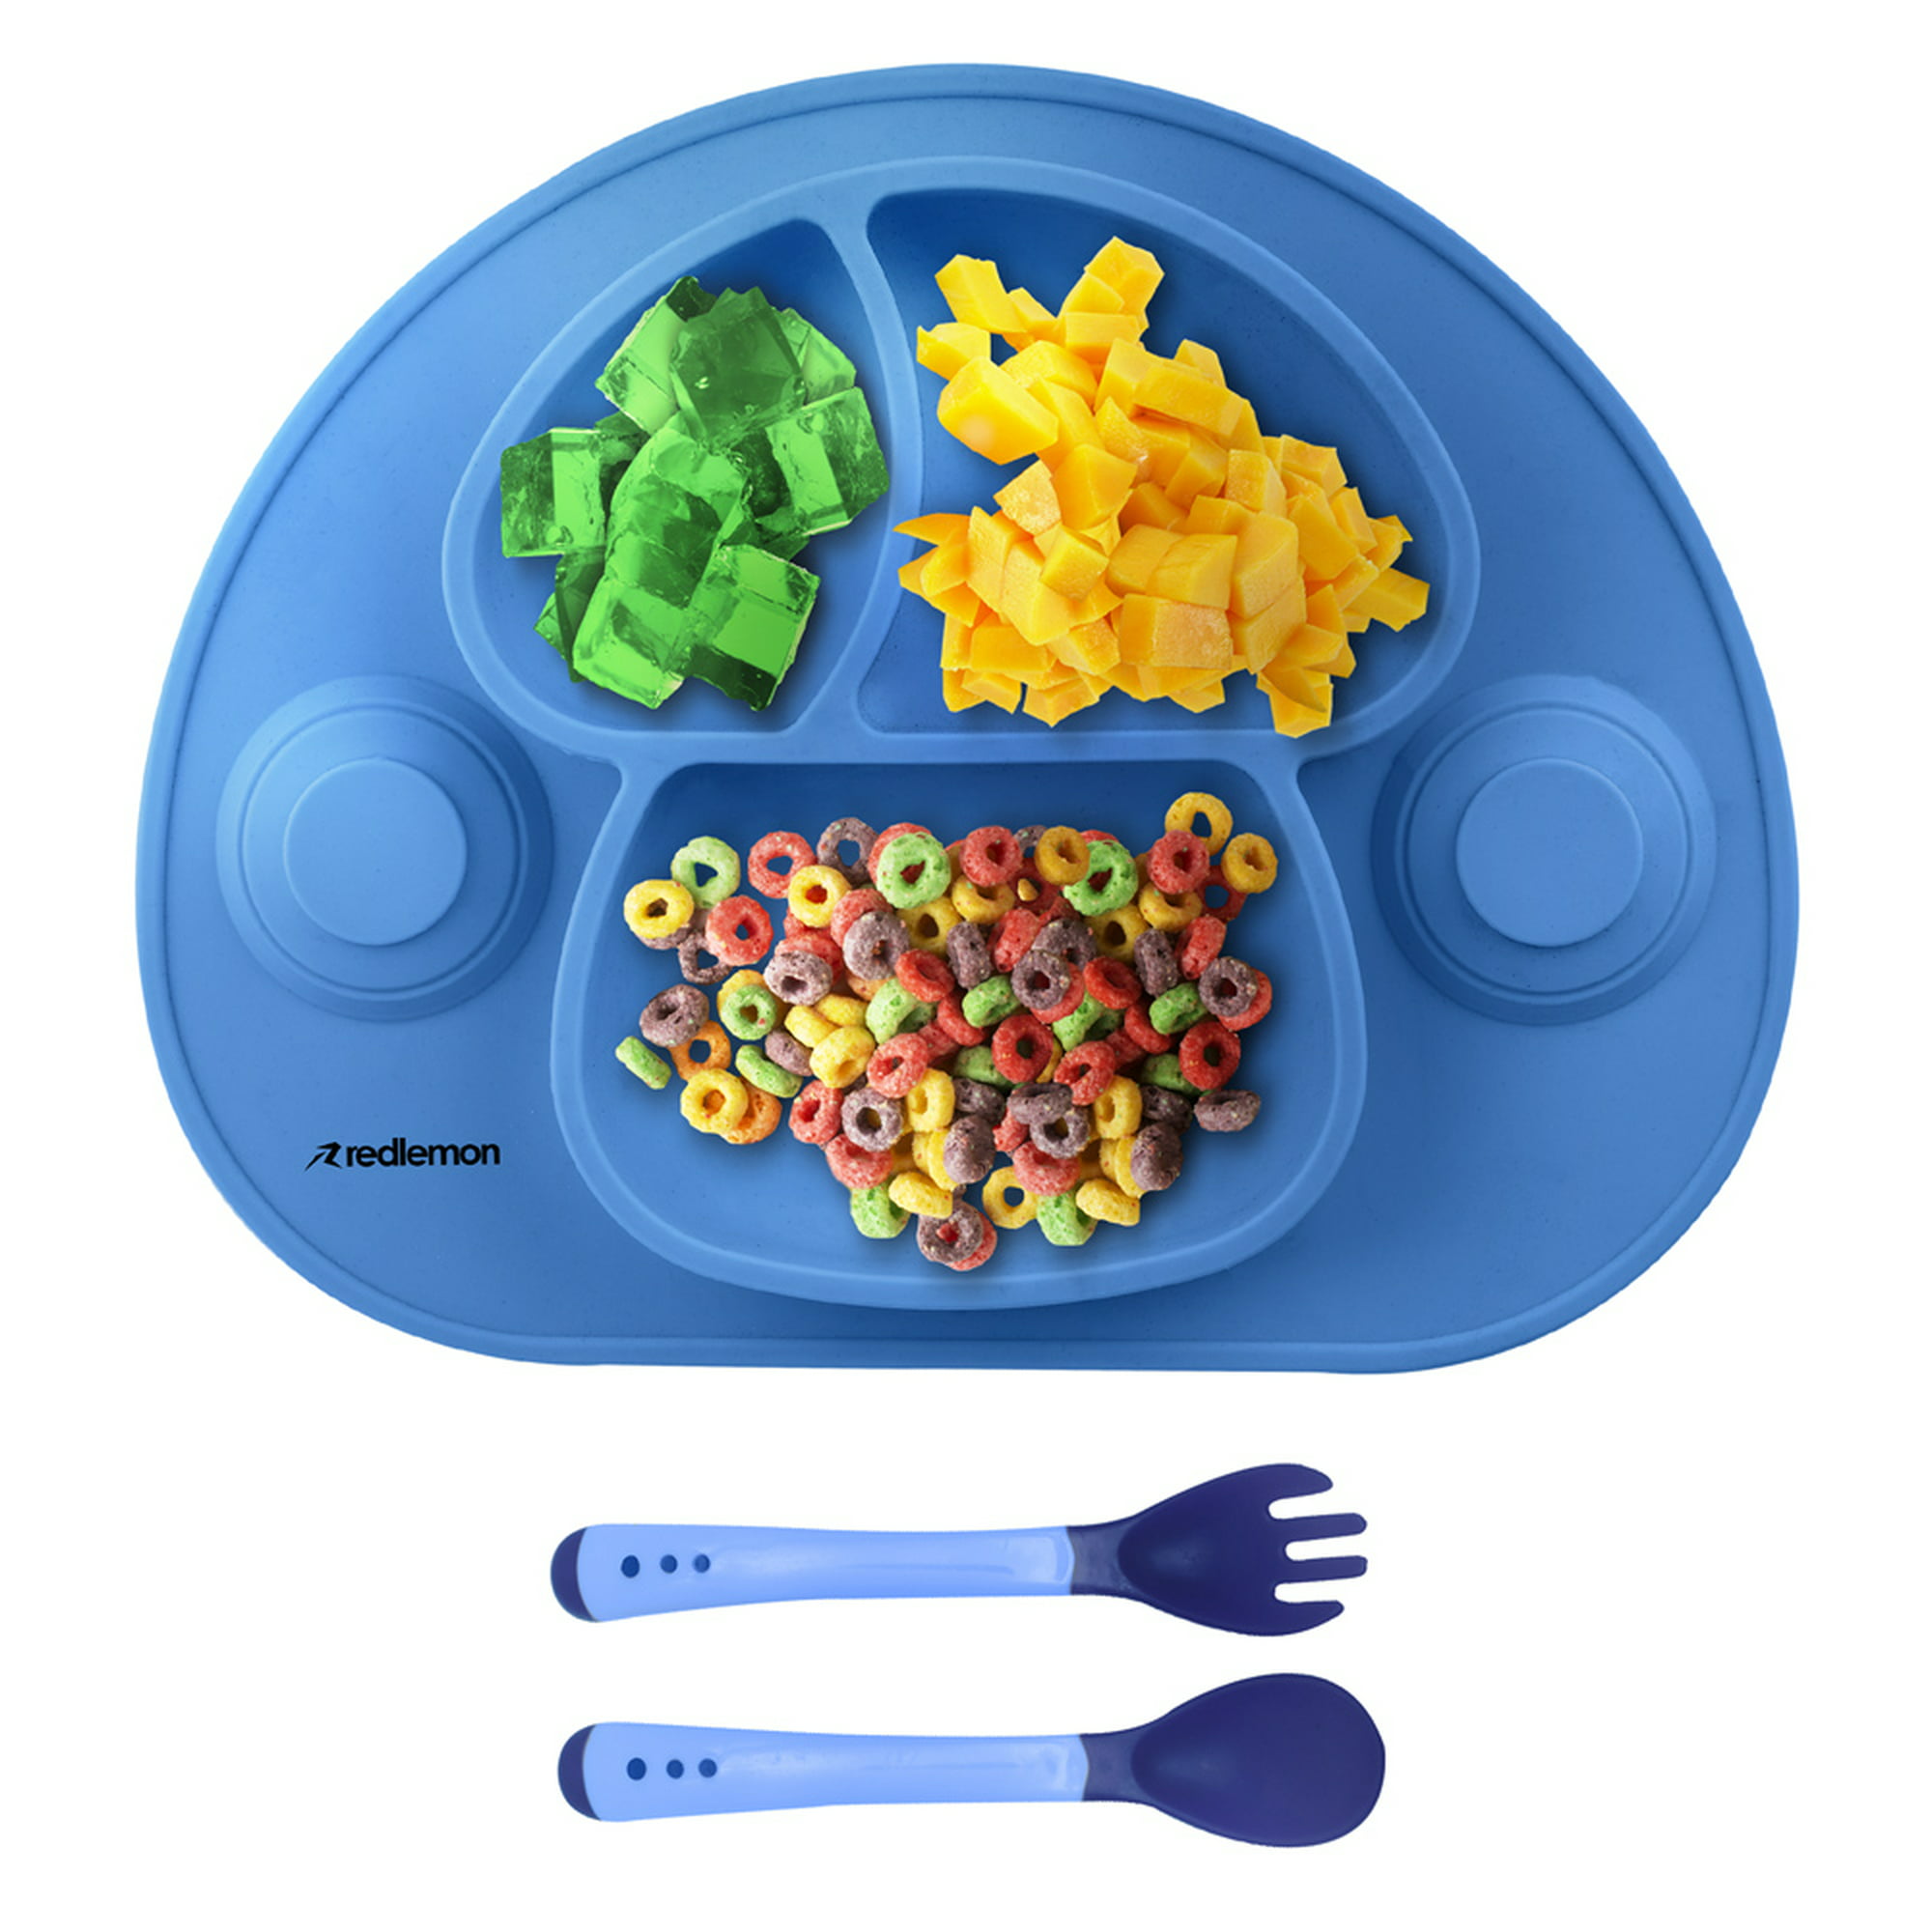 Especial Alimentación Infantil: platos y mesas divertidos